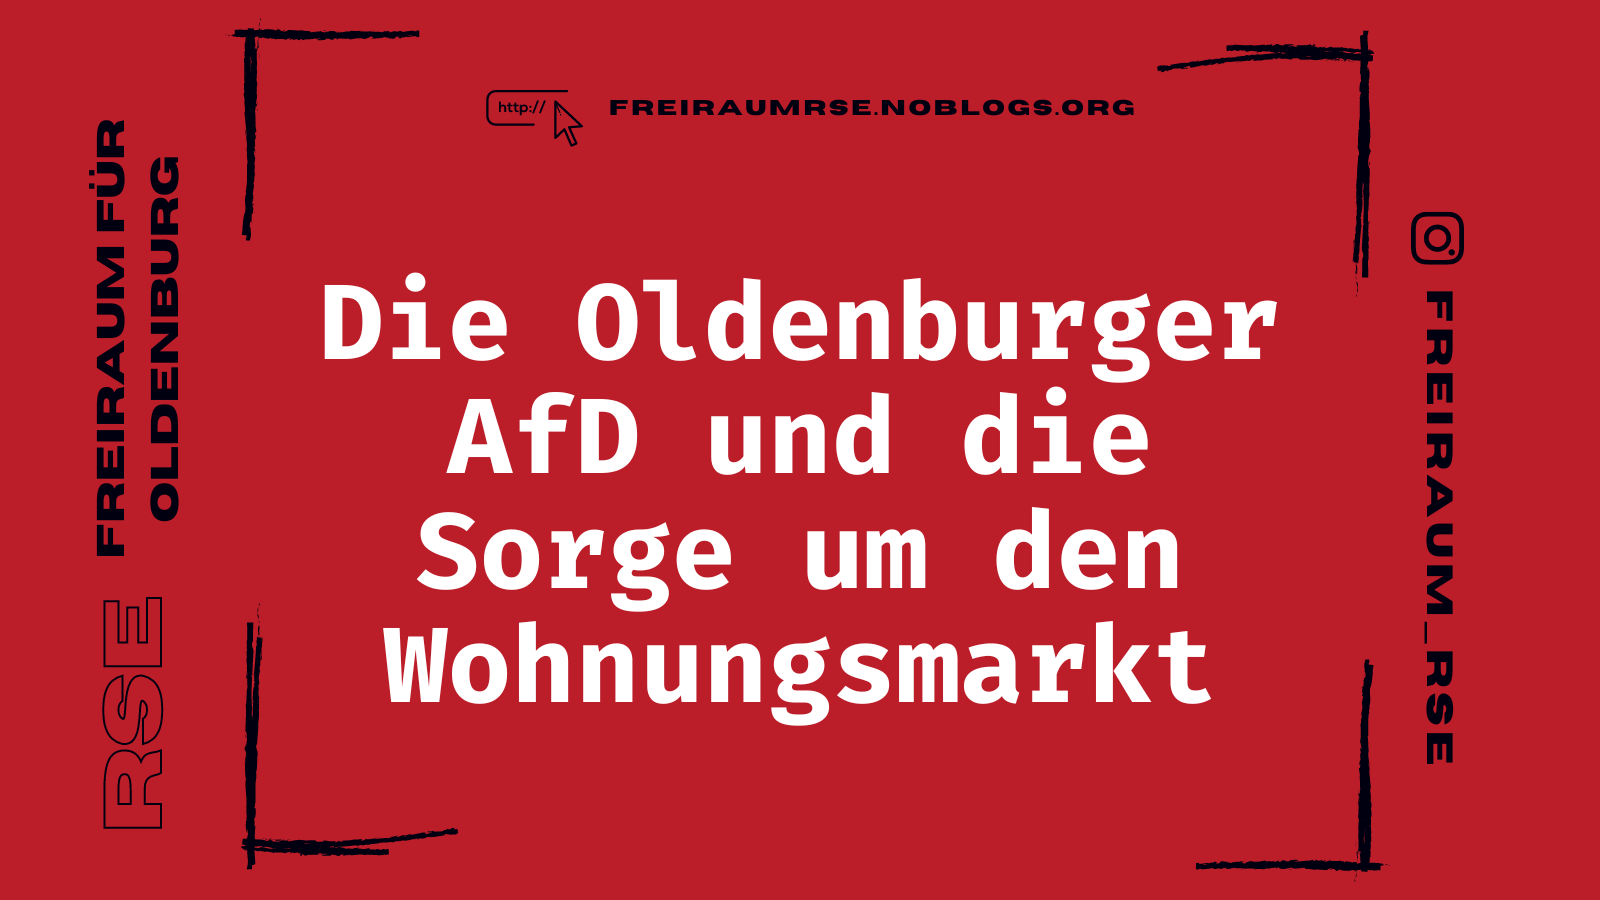 Die Oldenburger AfD und die Sorge um den Wohnungsmarkt